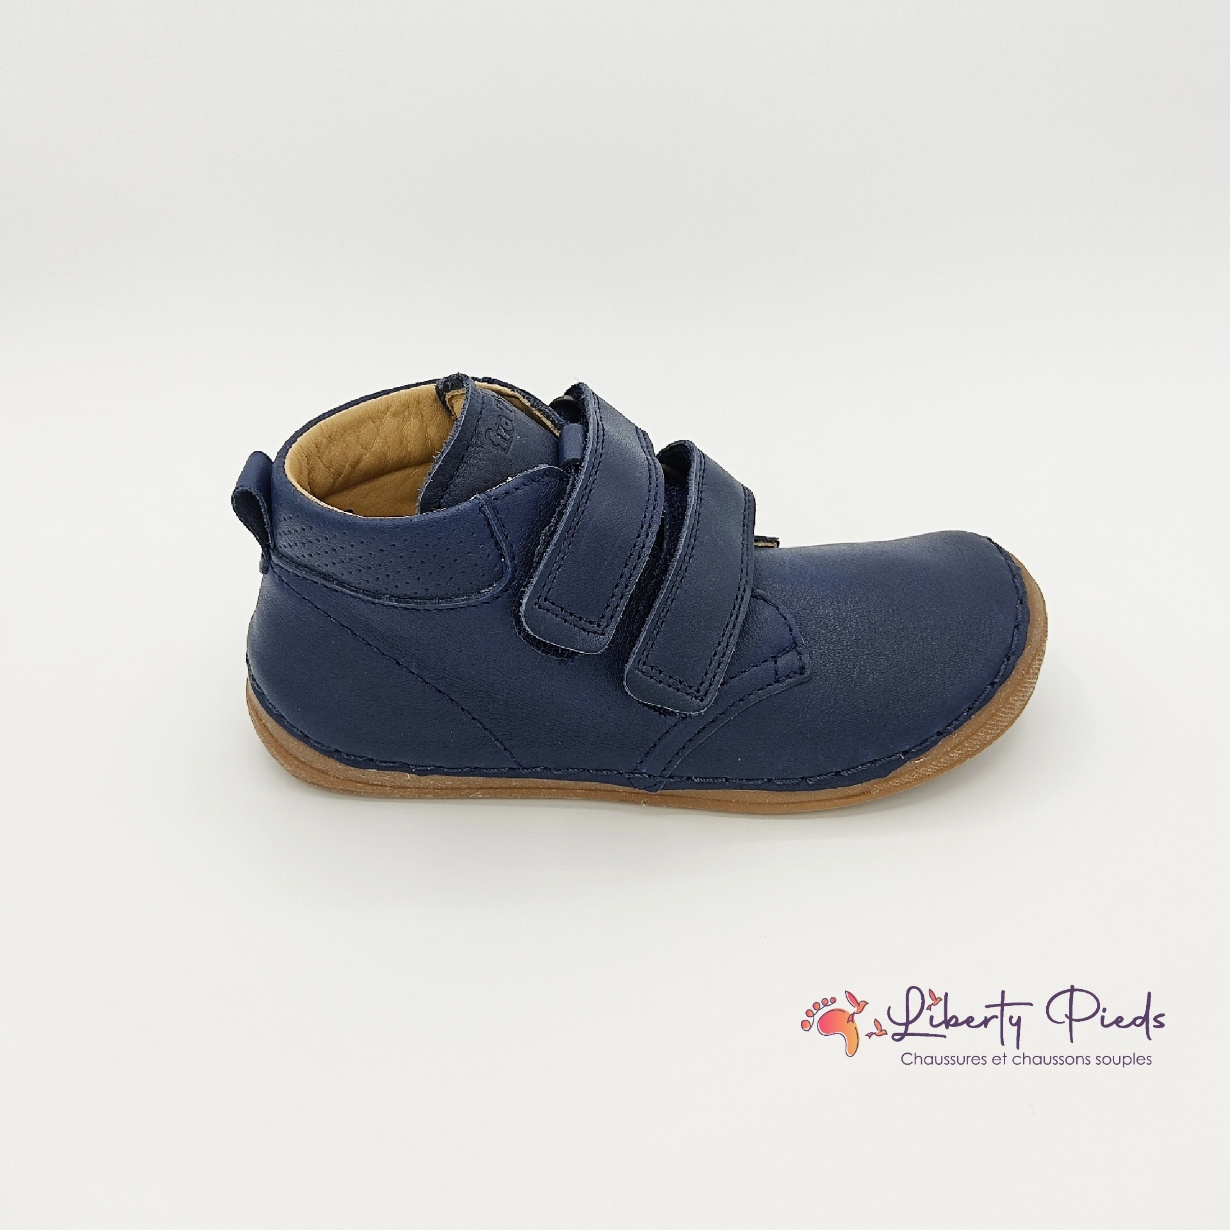 chaussures en cuir froddo paix velcro dark blue sur la boutique liberty pieds (10)